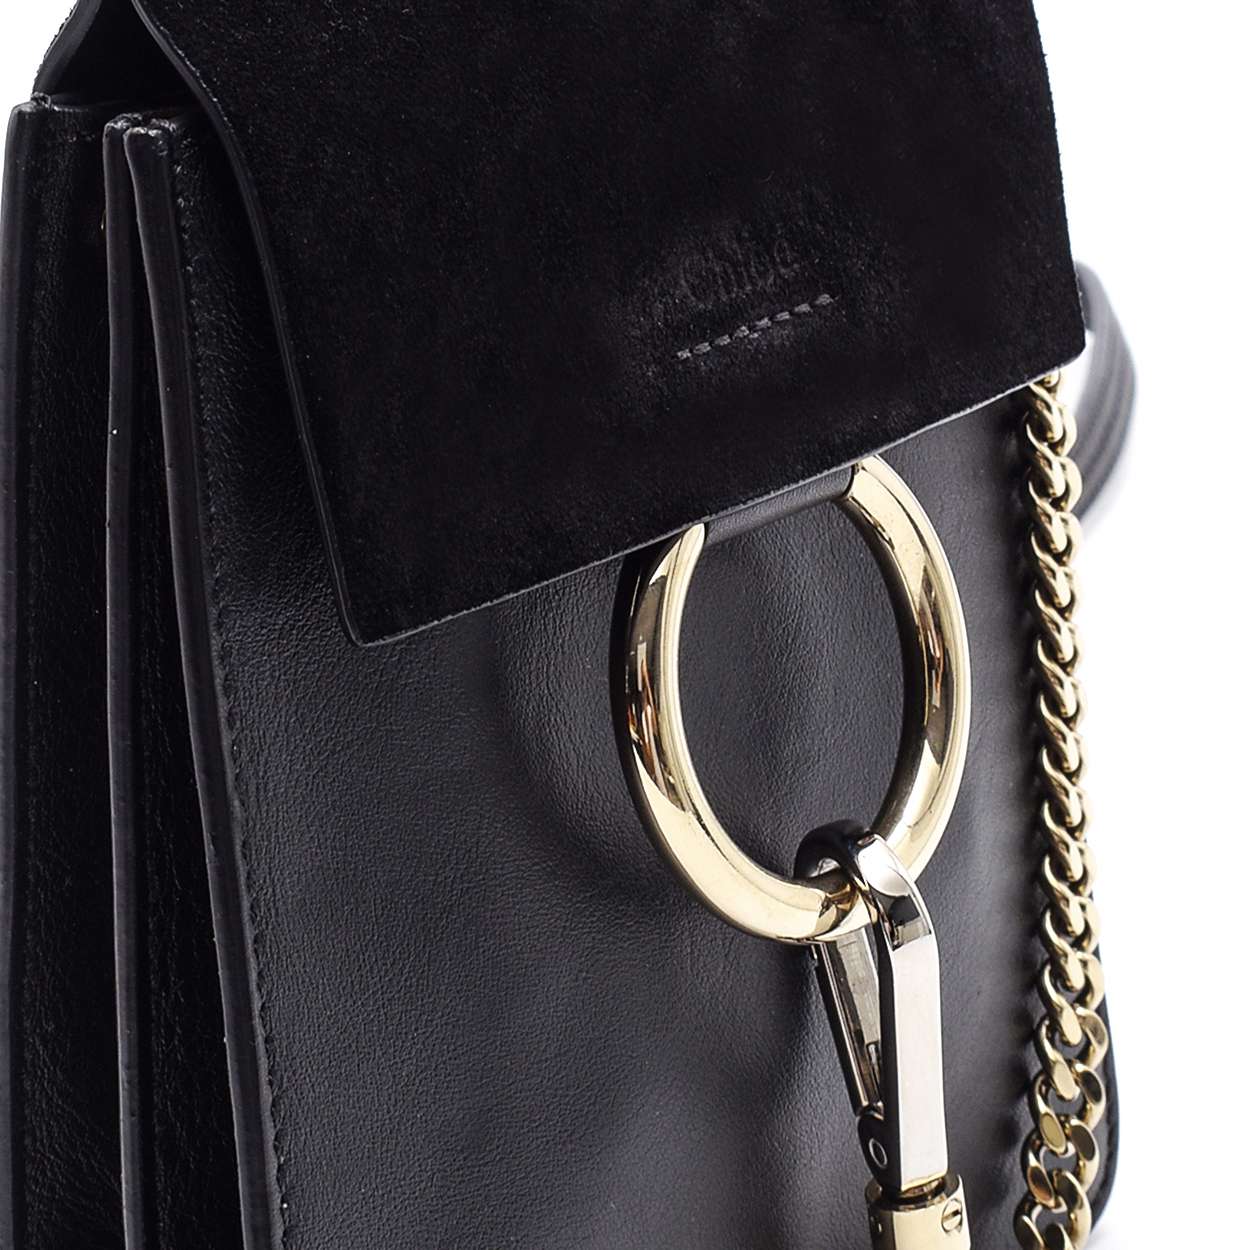 Chloe - Black Leather and Suede Faye Bracelet Messenger Bag